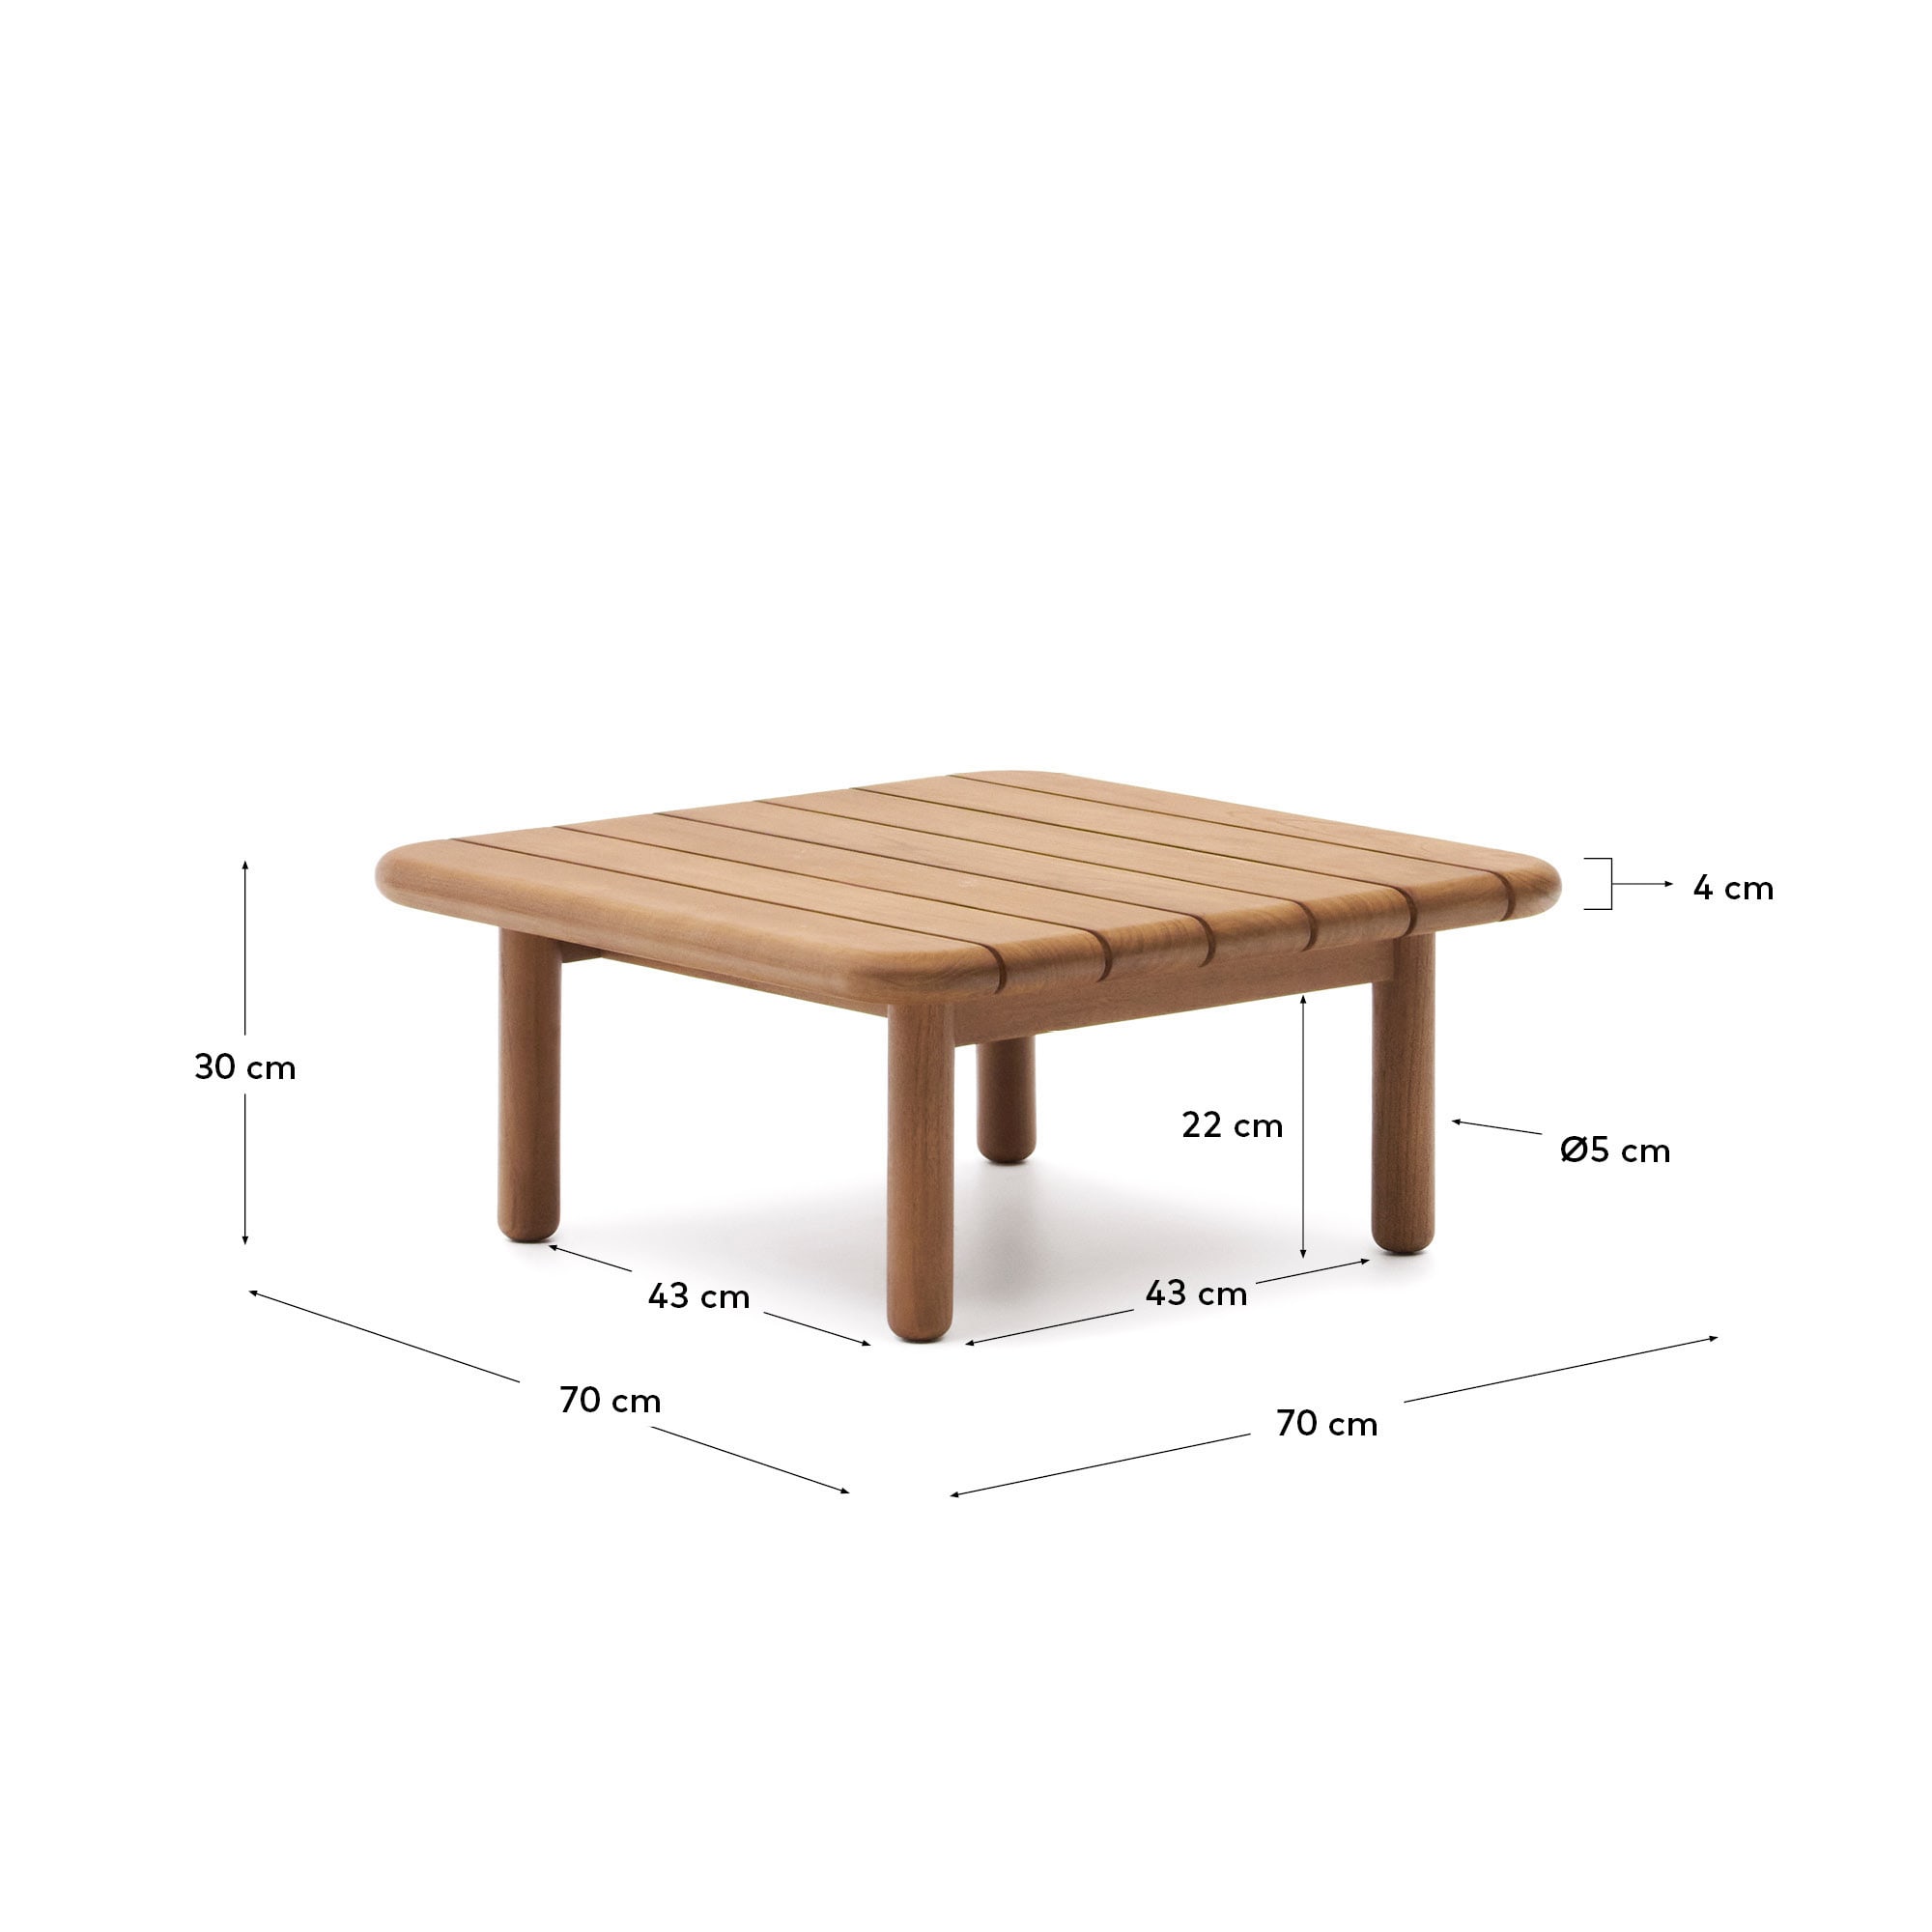 투르케타 아웃도어 티크나무 소파 테이블 70x70cm, 100%FSC - 크기